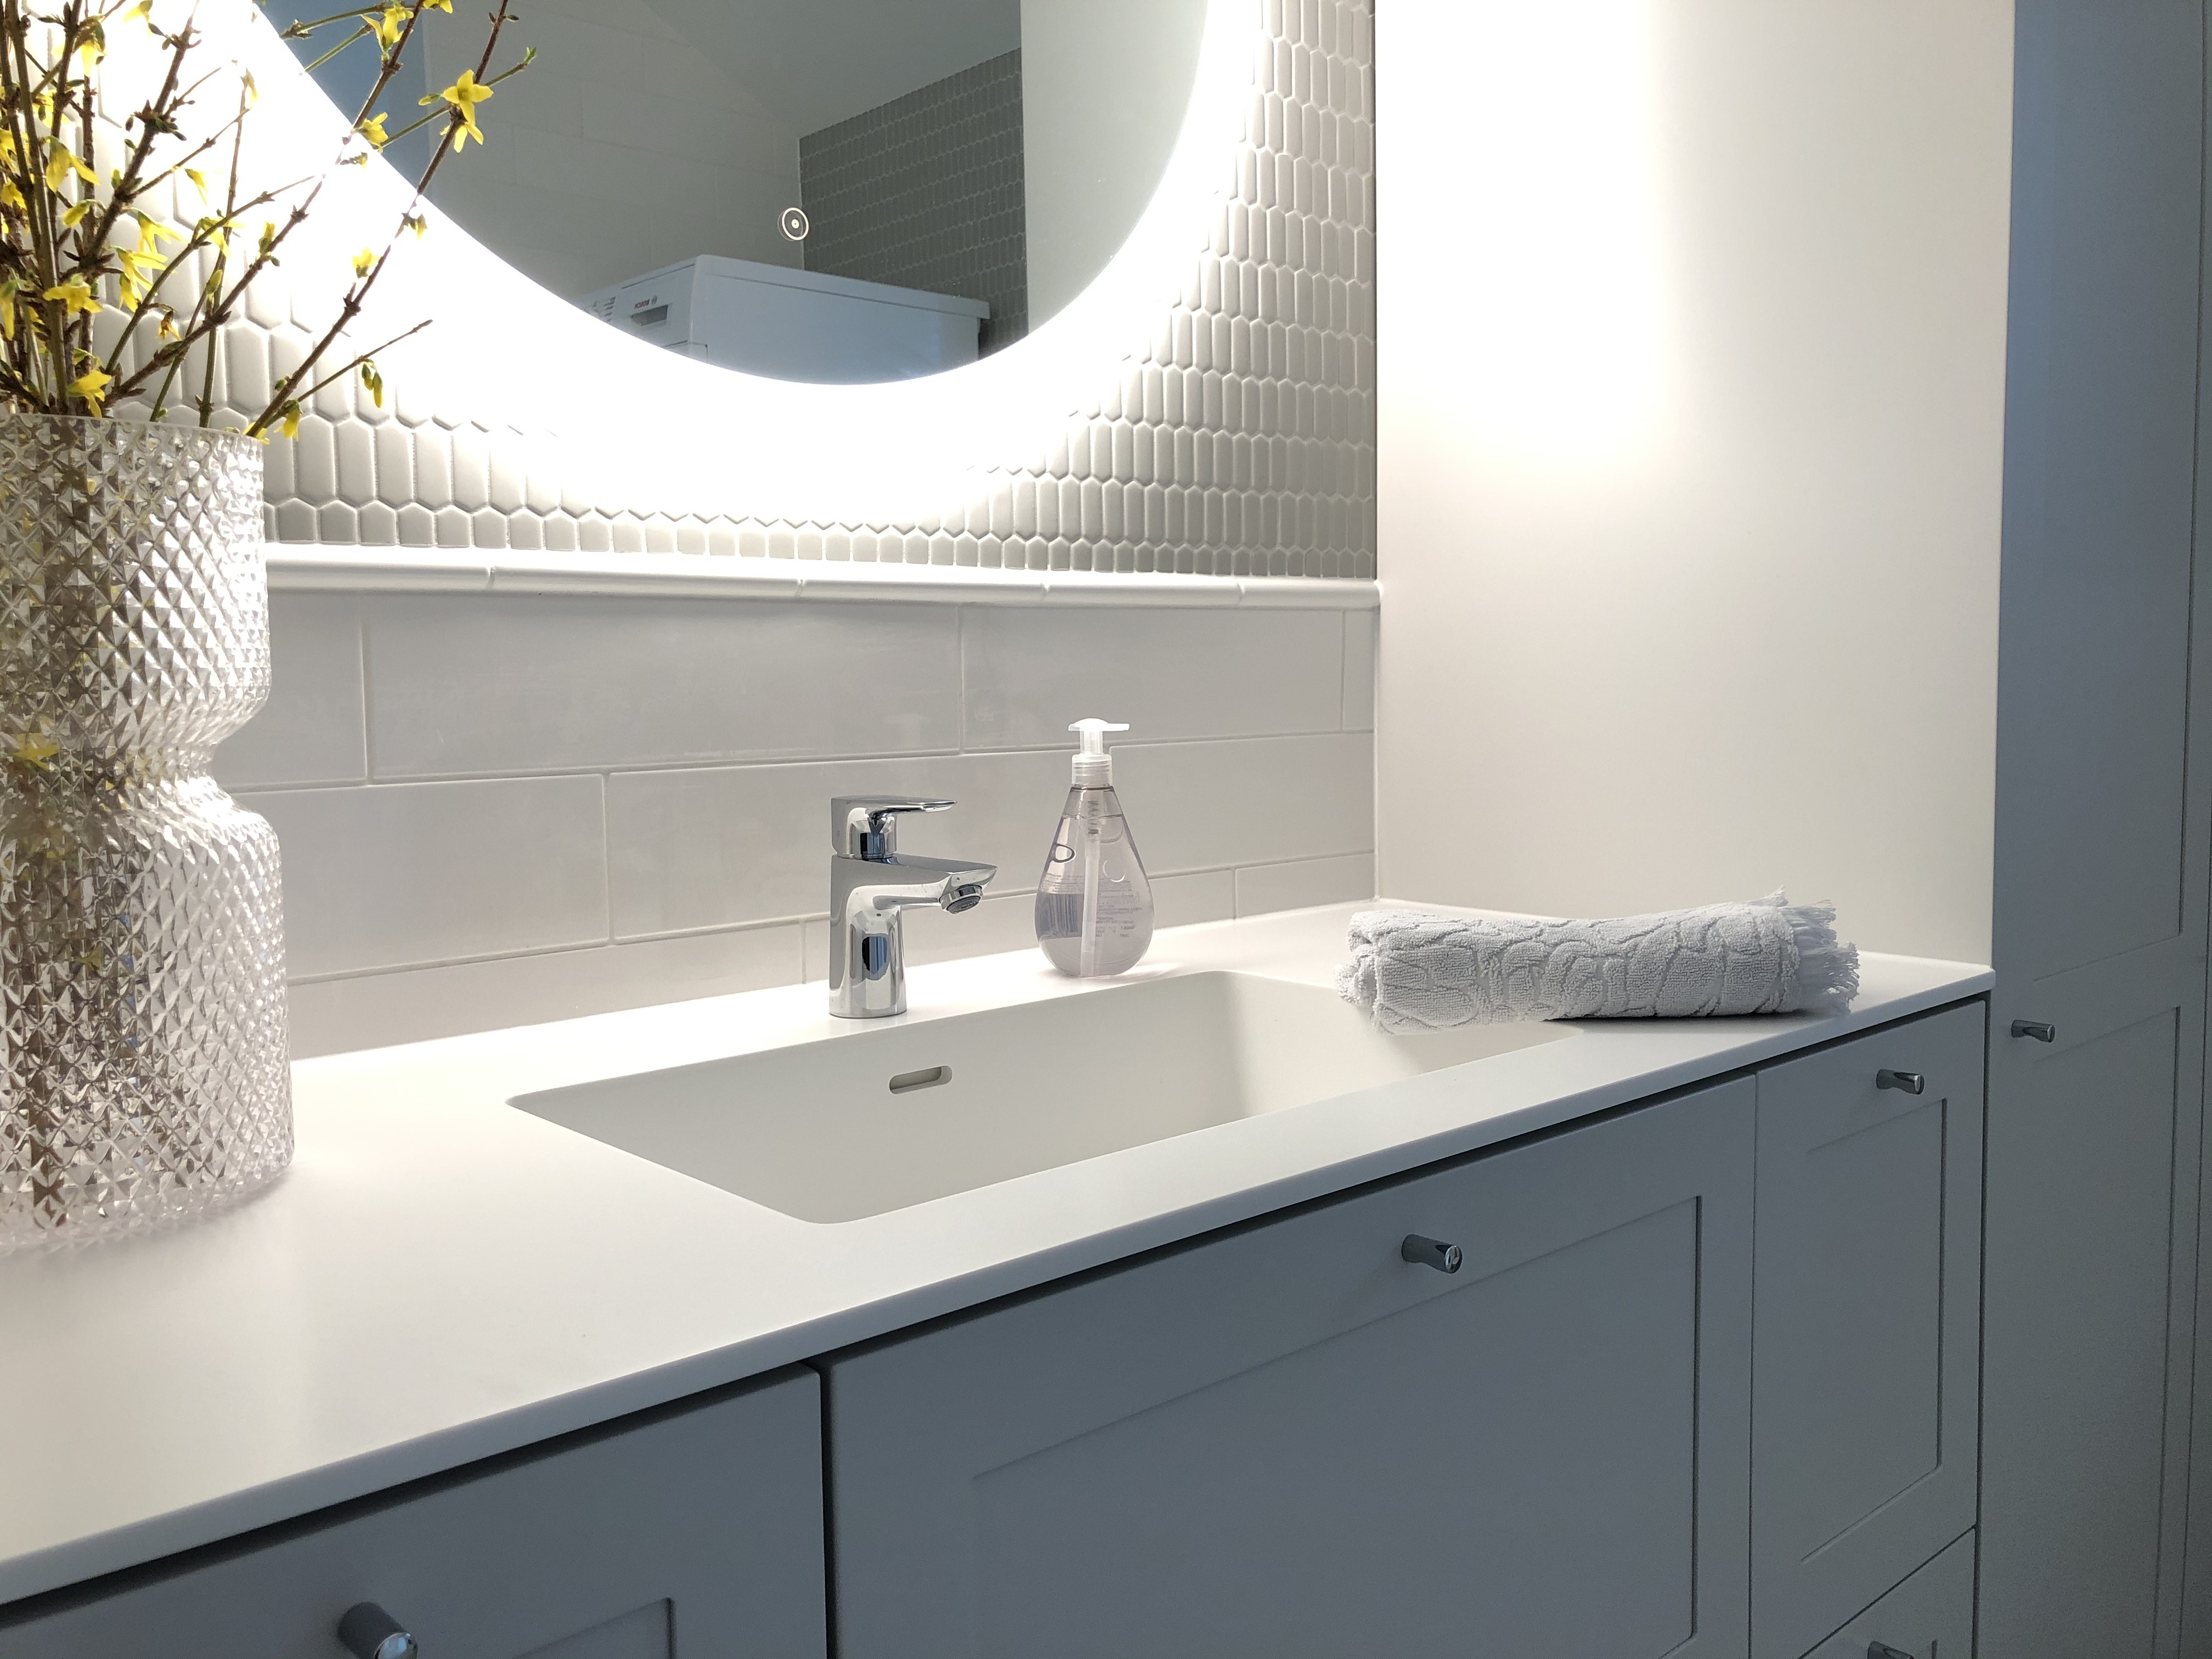 Referenssi kylpyhuoneremontista - vaalea, mosaiikkia, valkoiset suorakaiteen muotoiset laatat ja tiililadonta kylpyhuoneen seinällä.